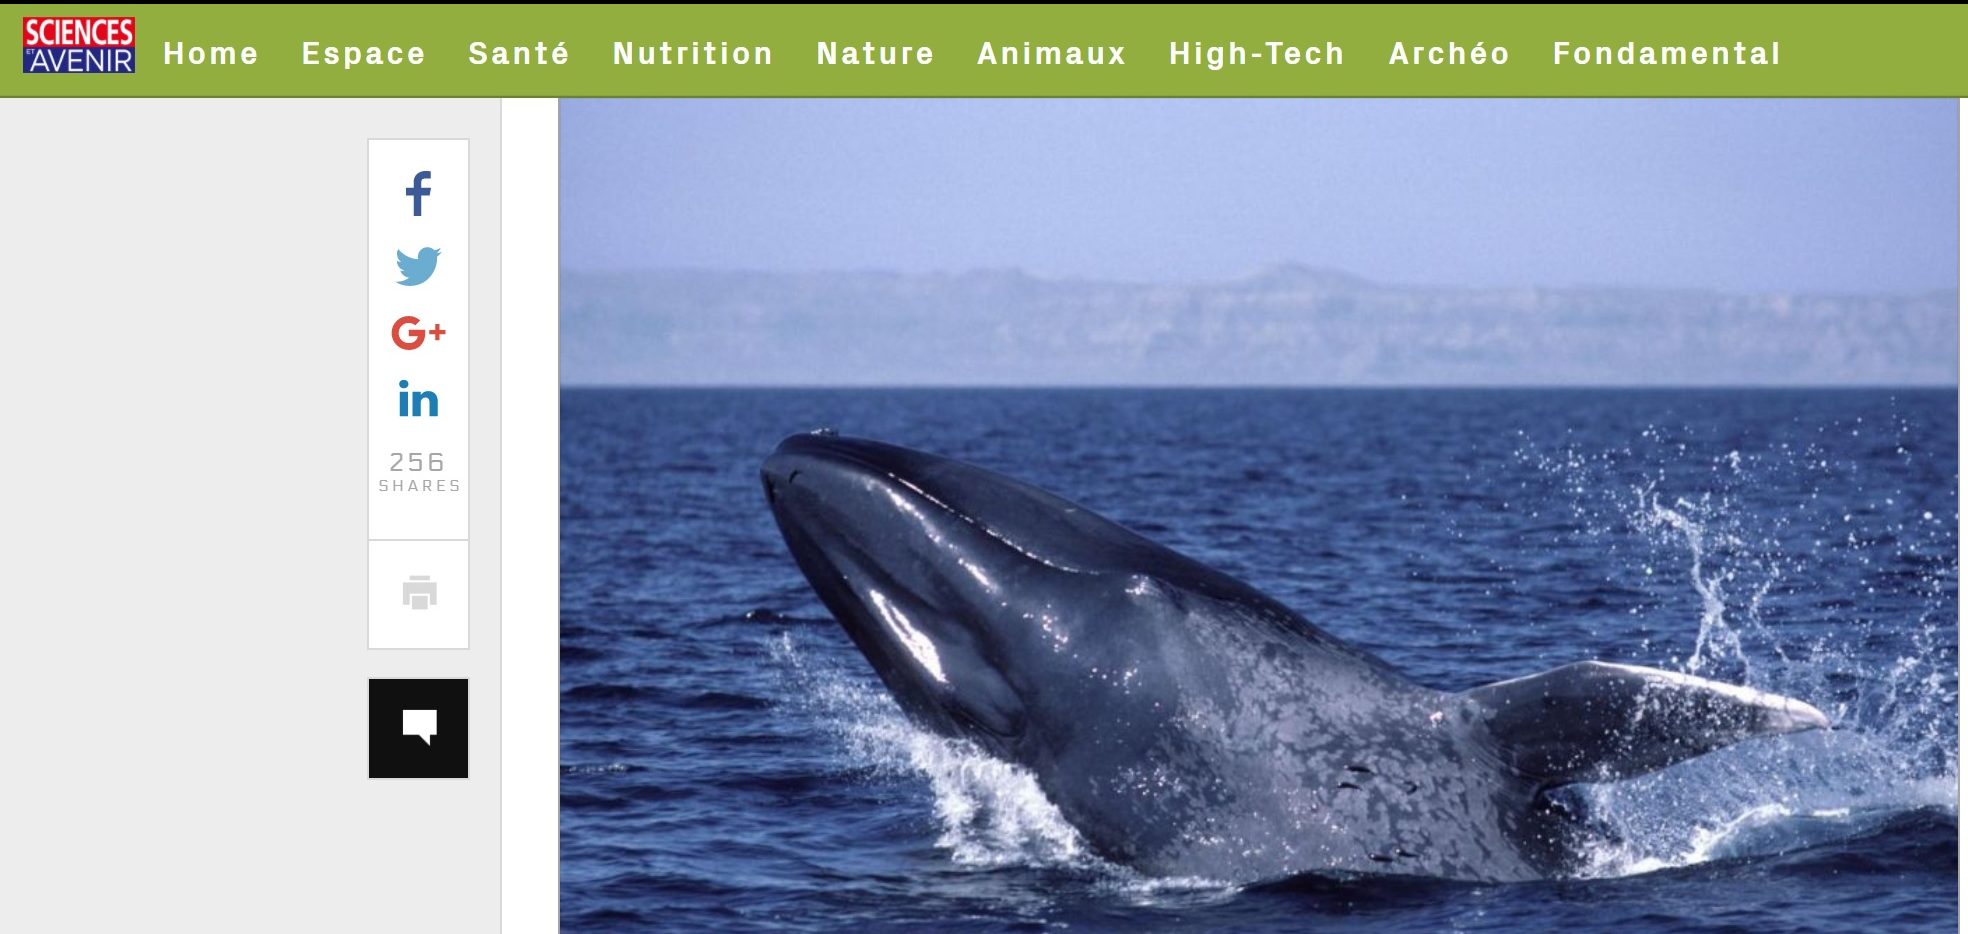 Les baleines bleues deviennent gauchères quand elles chassent en surface